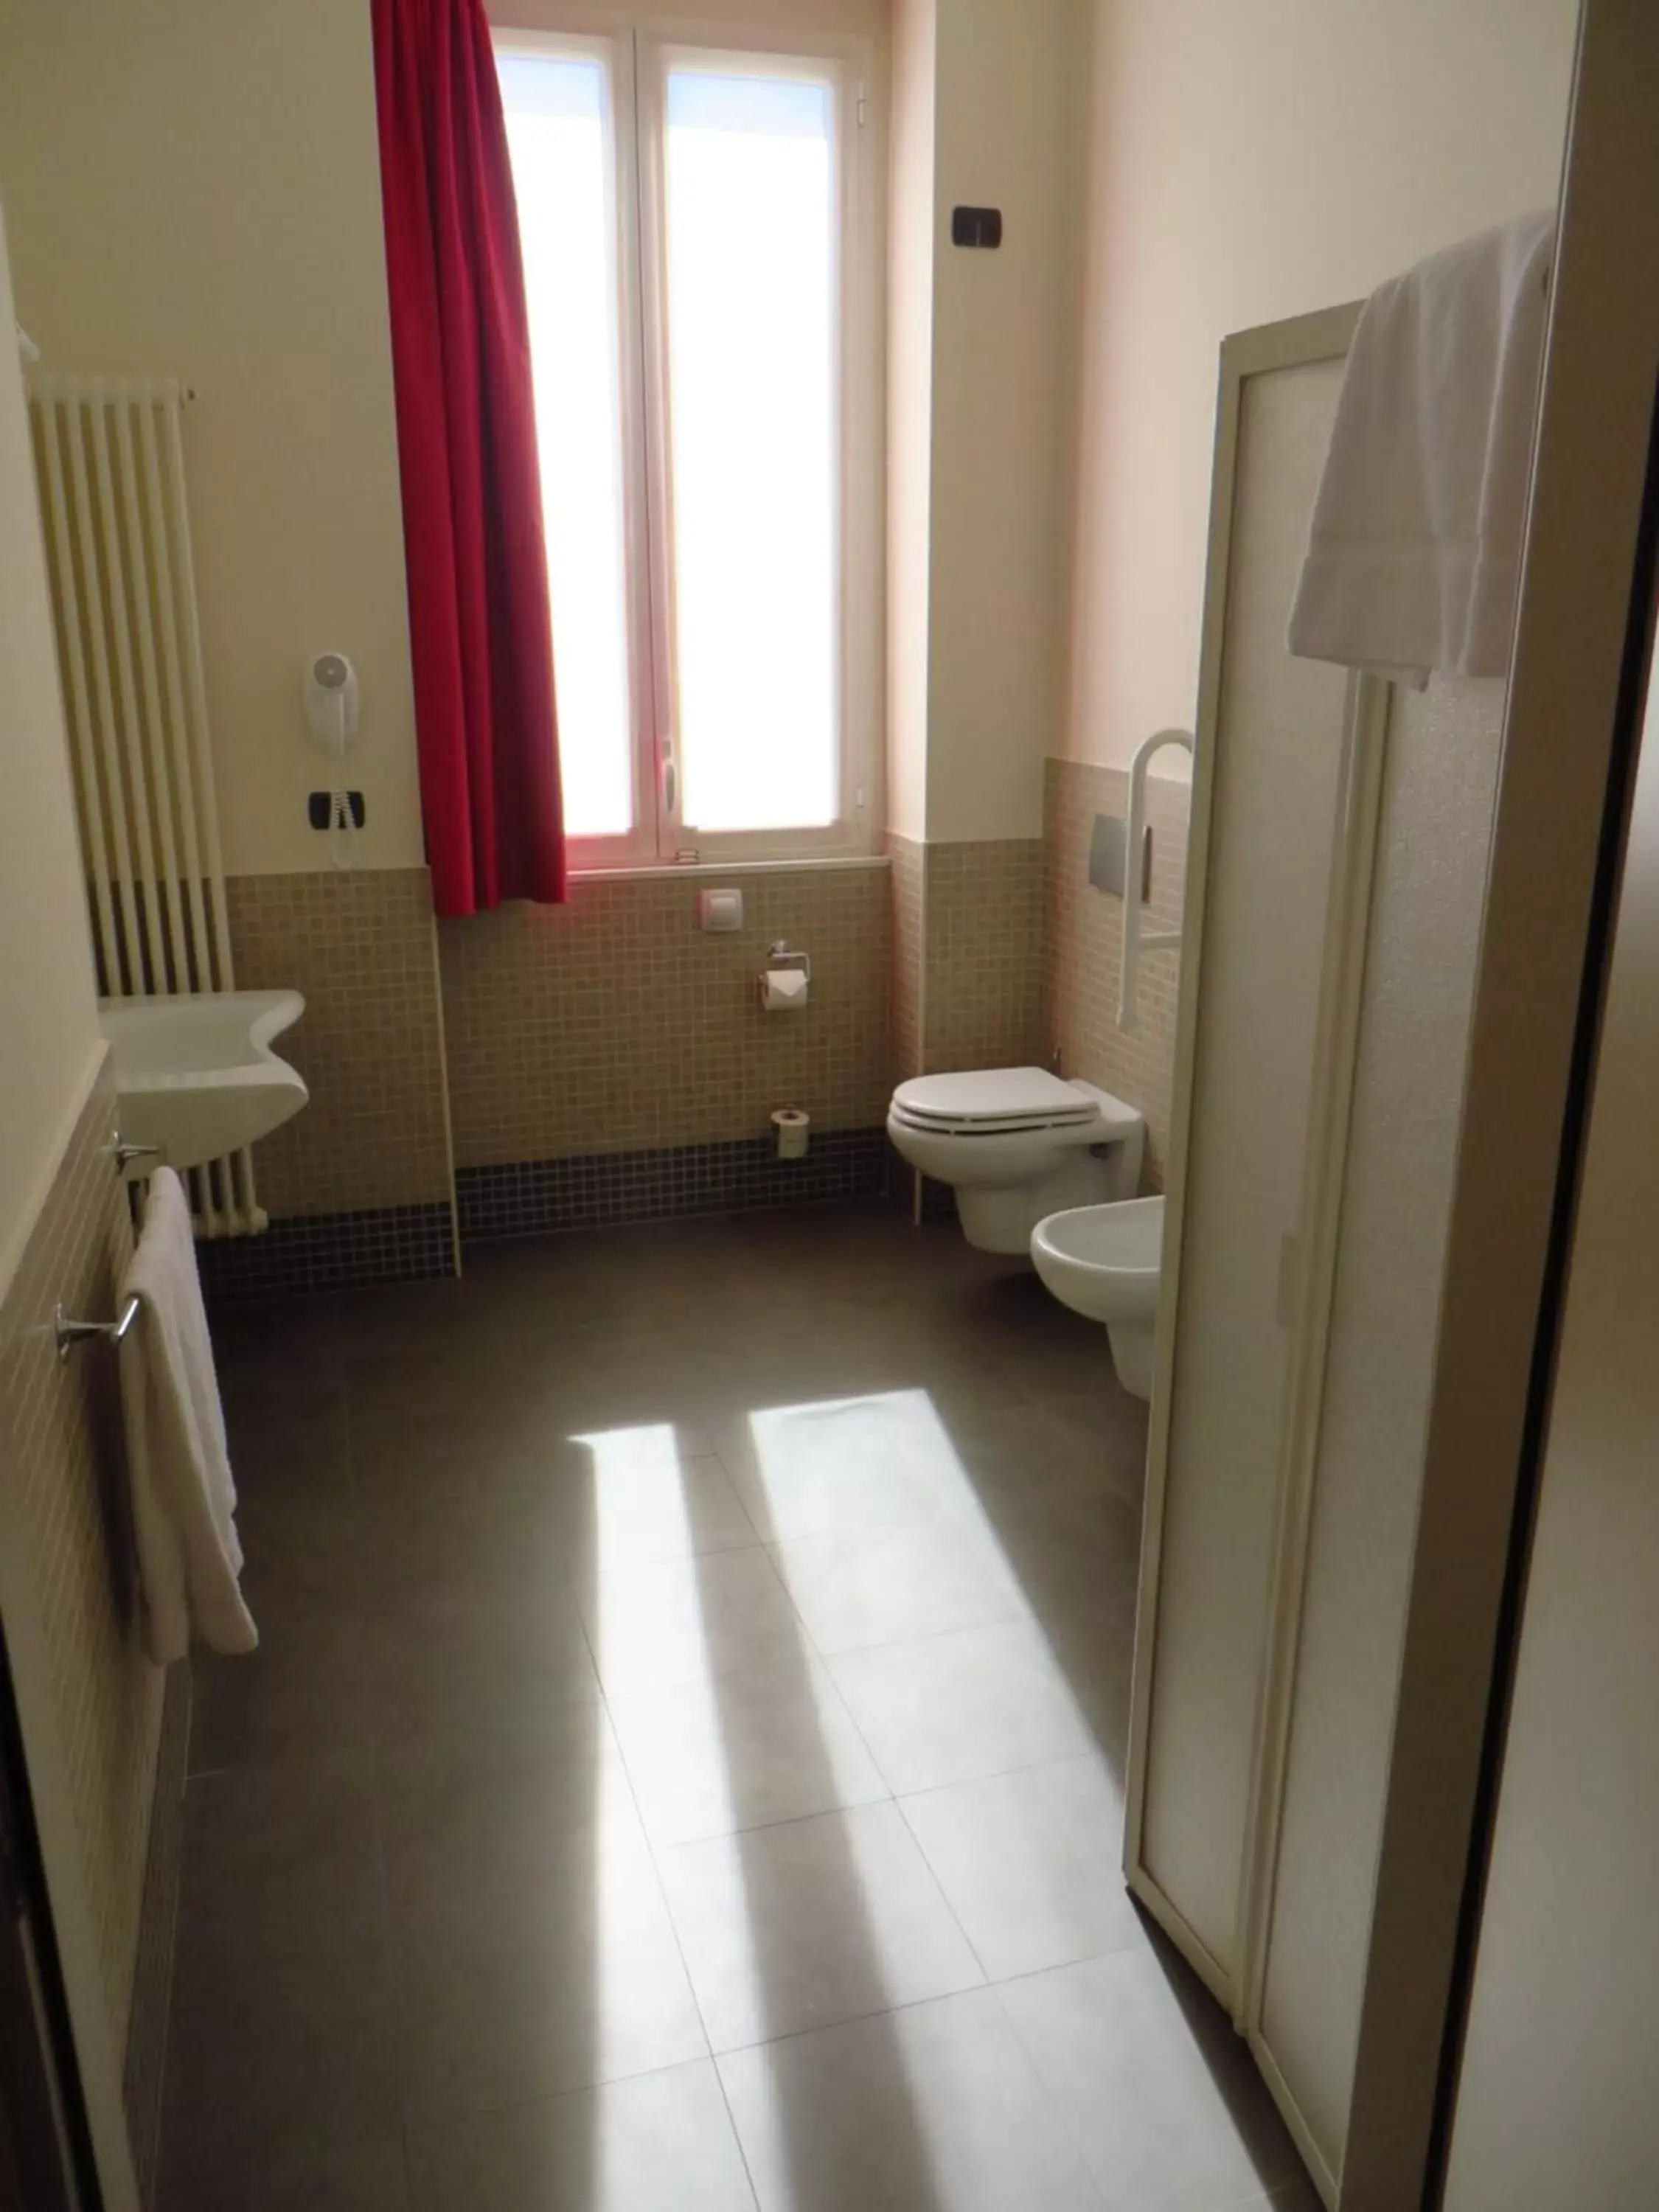 Bathroom in Bis Hotel Varese